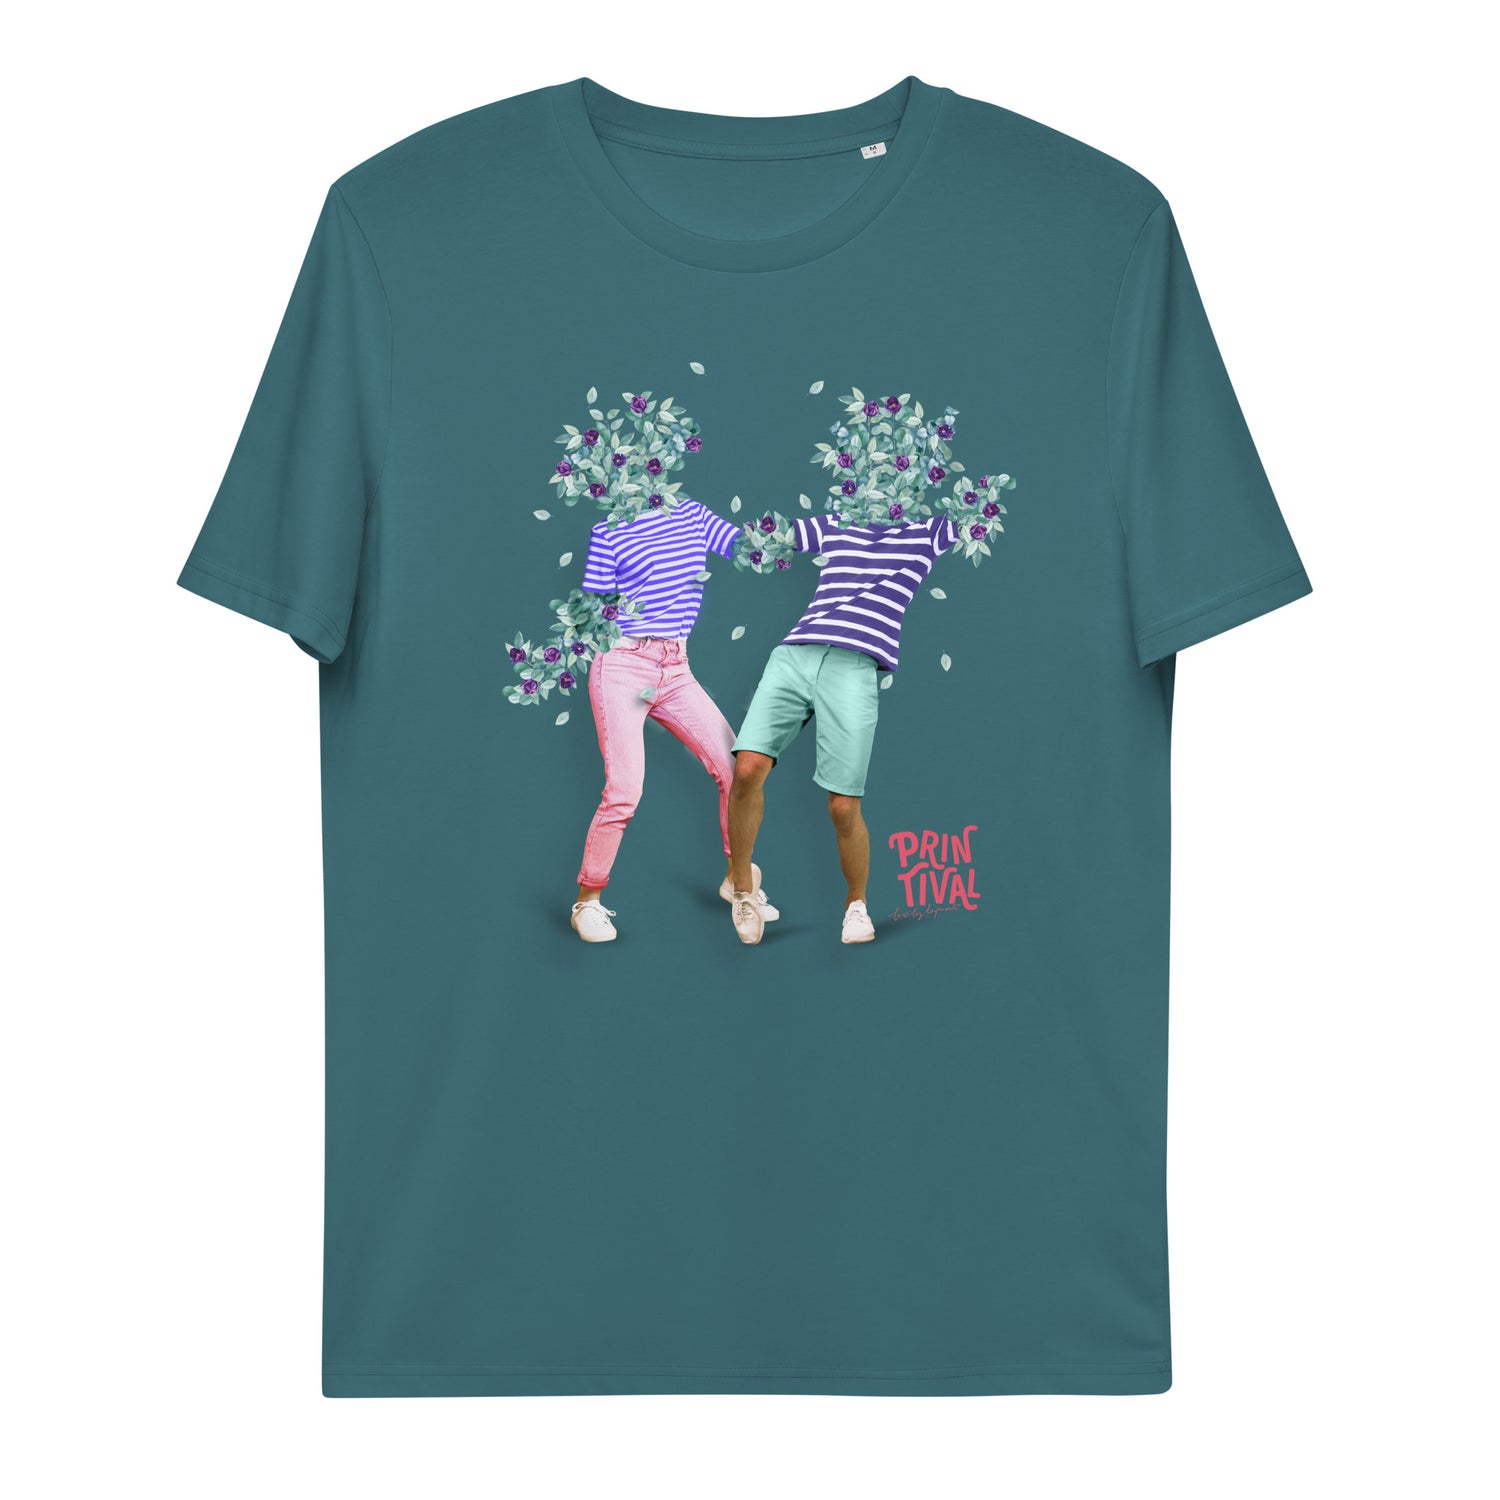 Printival 2024 - T-shirt unisexe en coton biologique